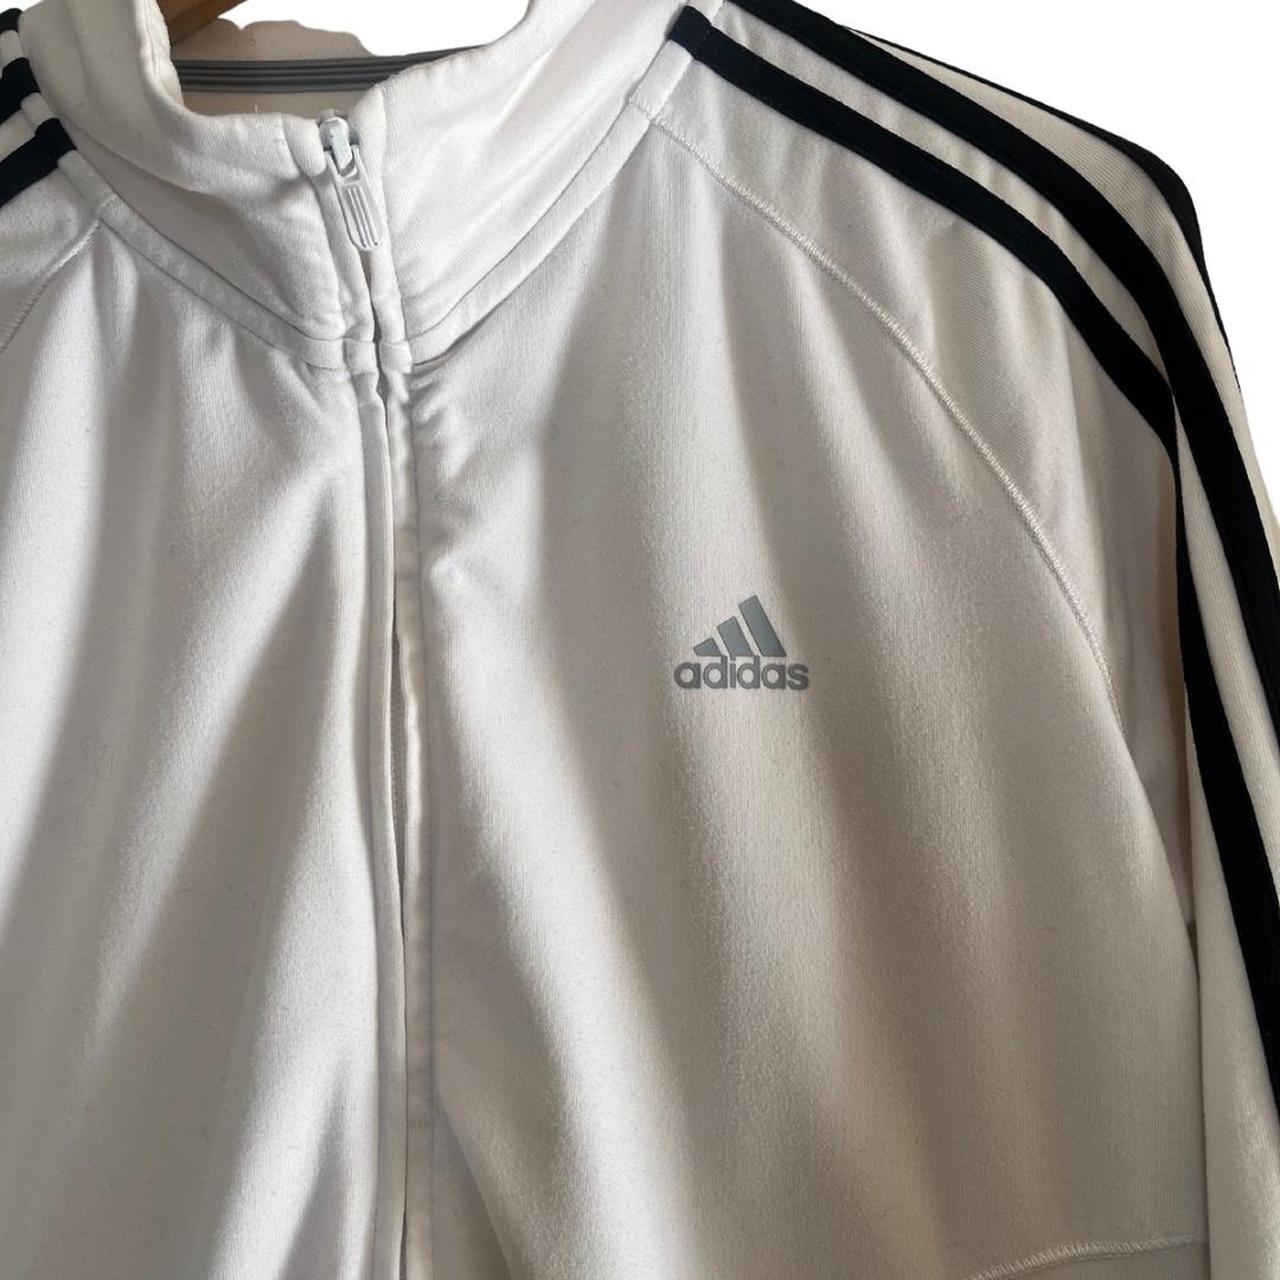 Adidas zip up jacket White & black Size: 14... - Depop